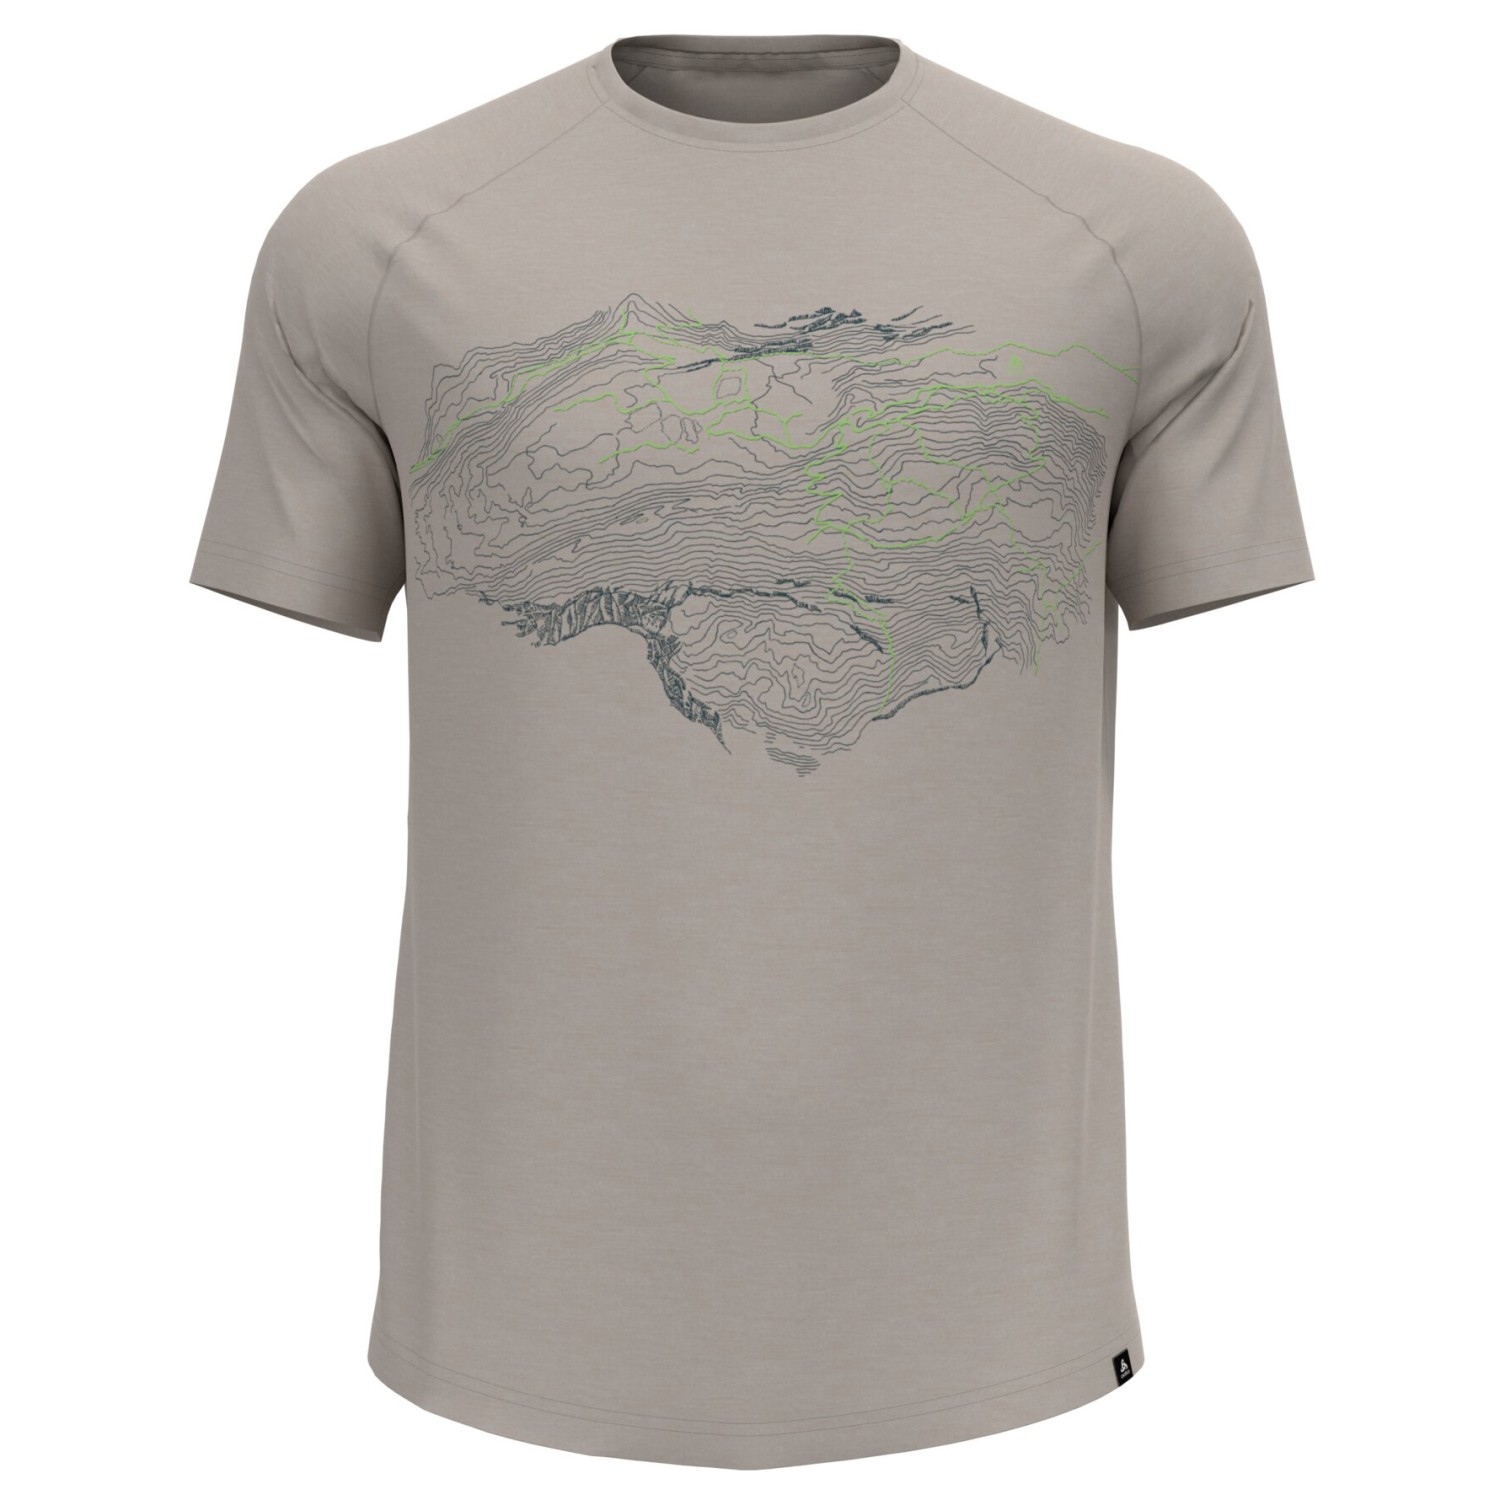 Рубашка из мериноса Odlo Ascent PW 130 Topography Crew Neck S/S, цвет Silver Cloud Melange